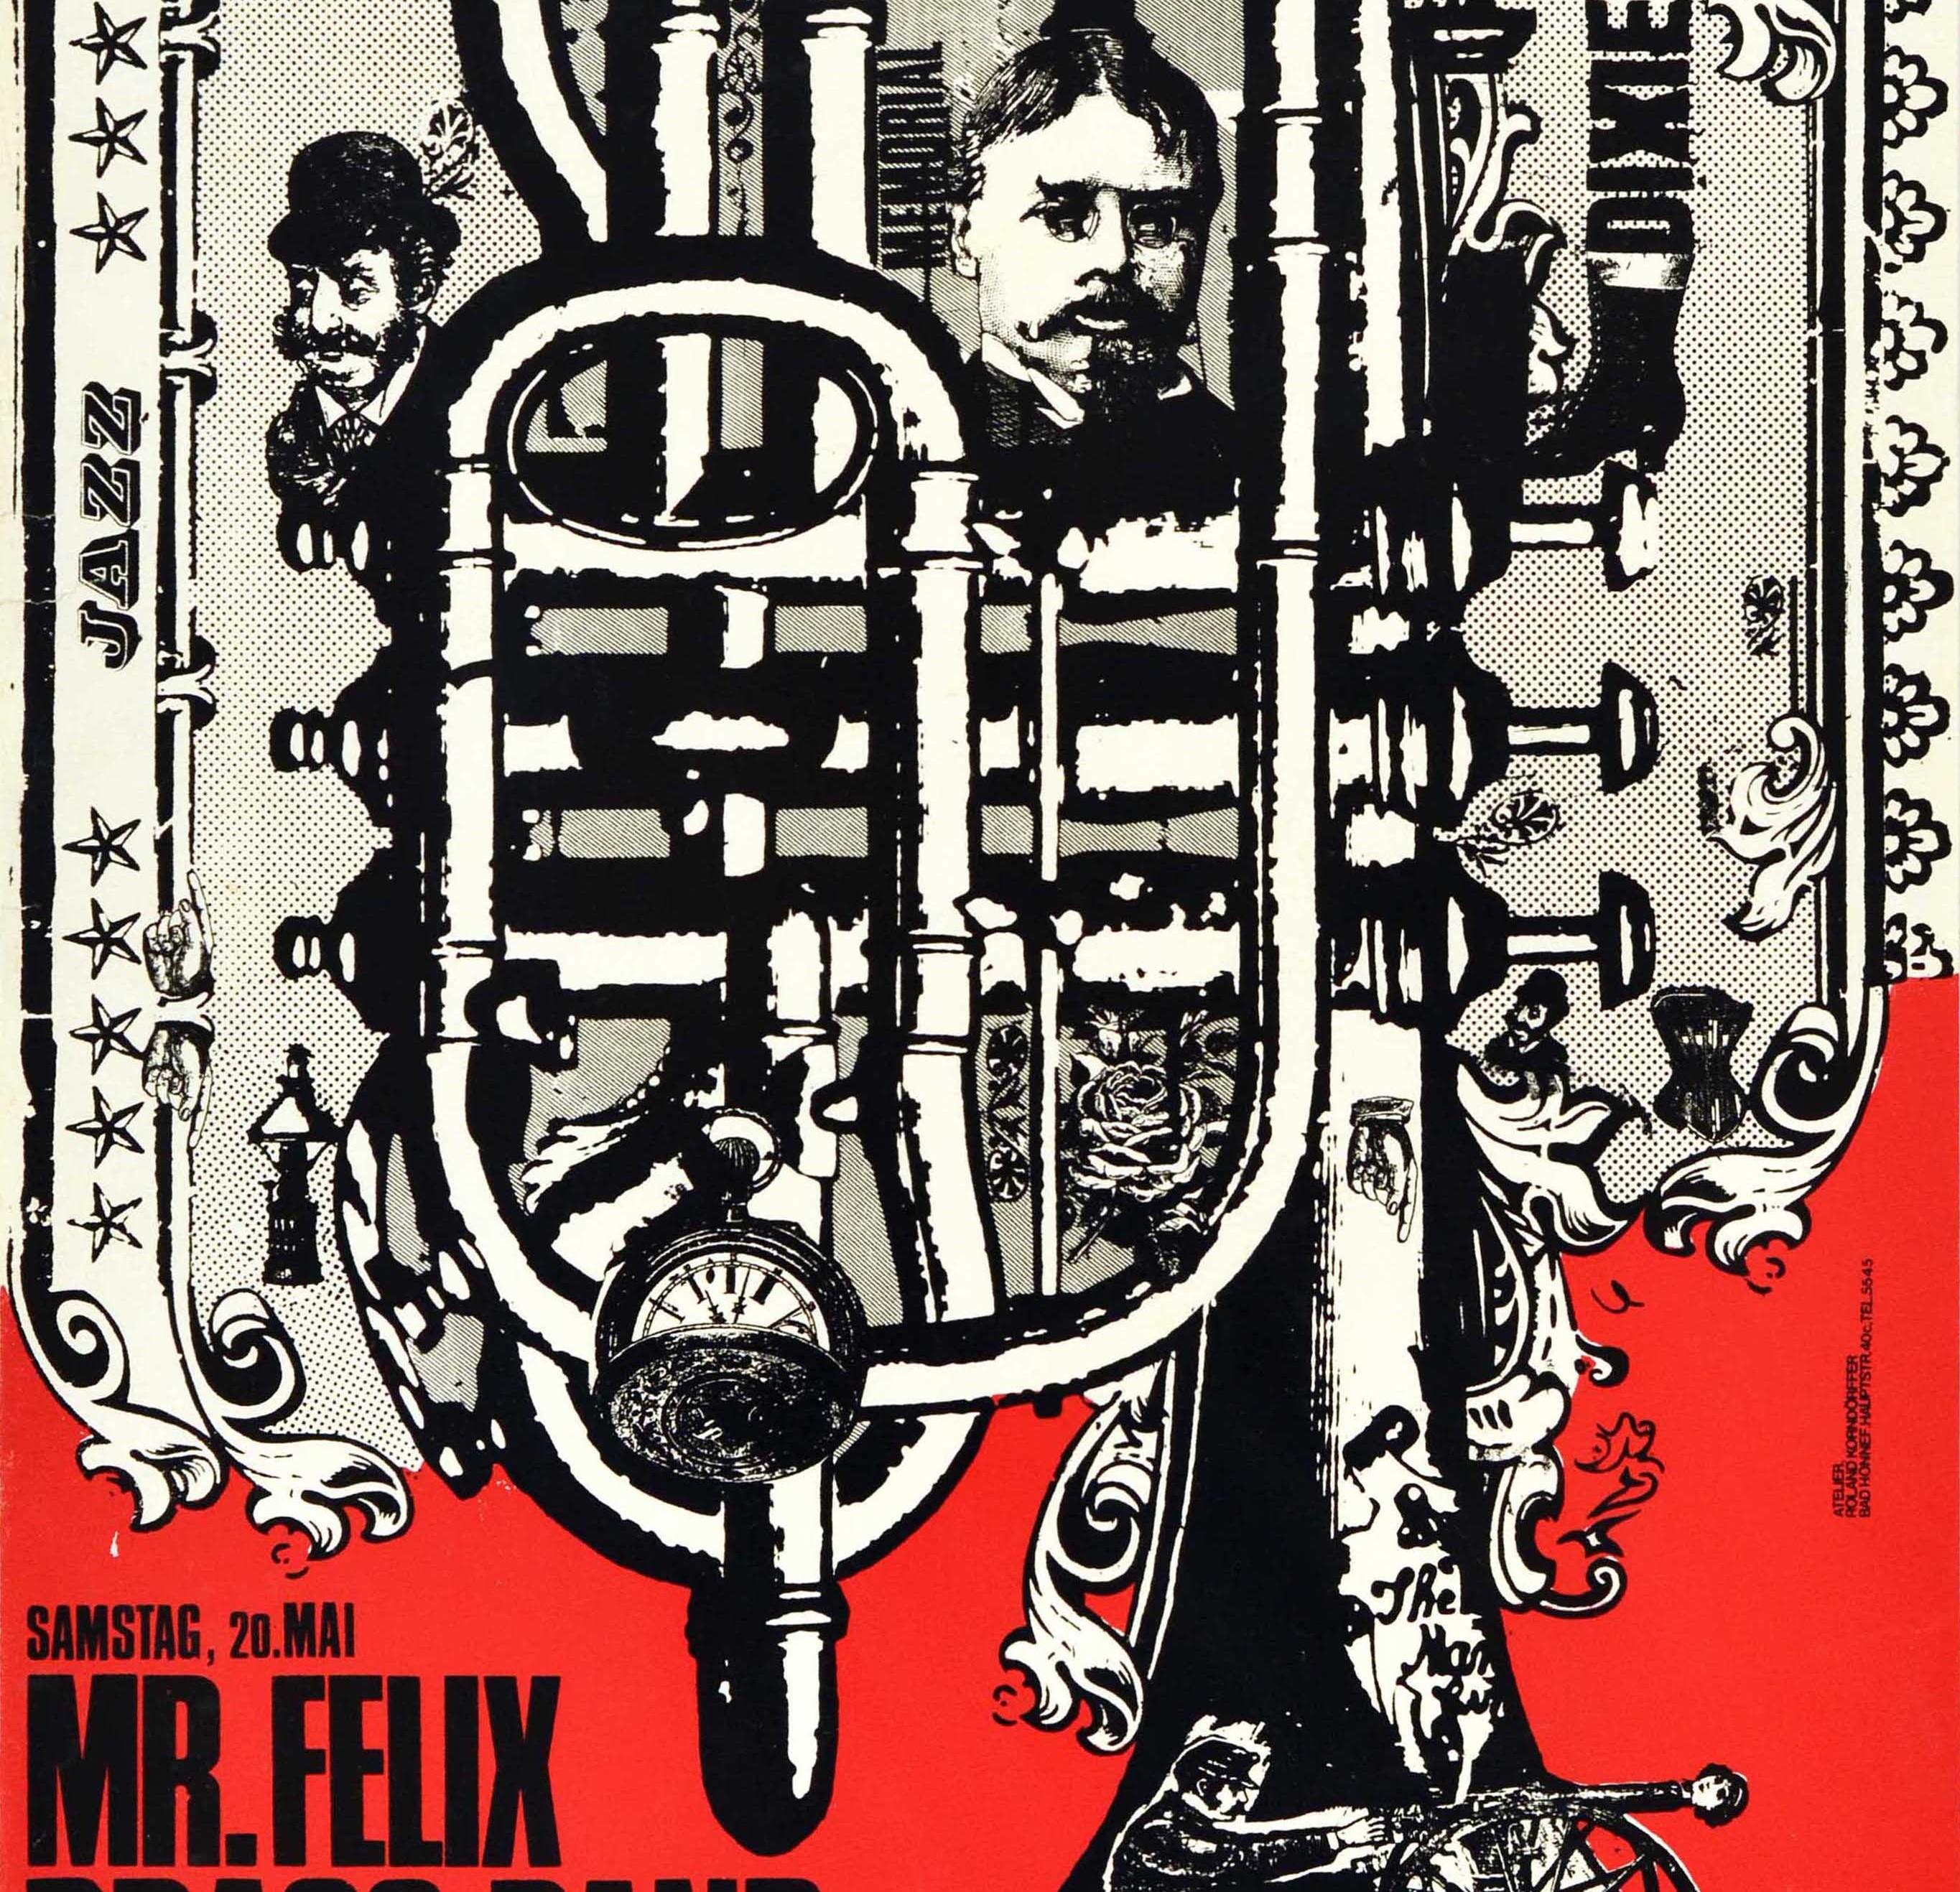 Original-Werbeplakat für die Brass Band Felix im South Border Jazz Club in Bad Honnef am Samstag, den 20. Mai. Das Plakat zeigt ein schwarz-weißes Motiv mit einer Trompete in der Mitte in einem dekorativen Blumenrahmen, die Worte Jazz und Dixie im